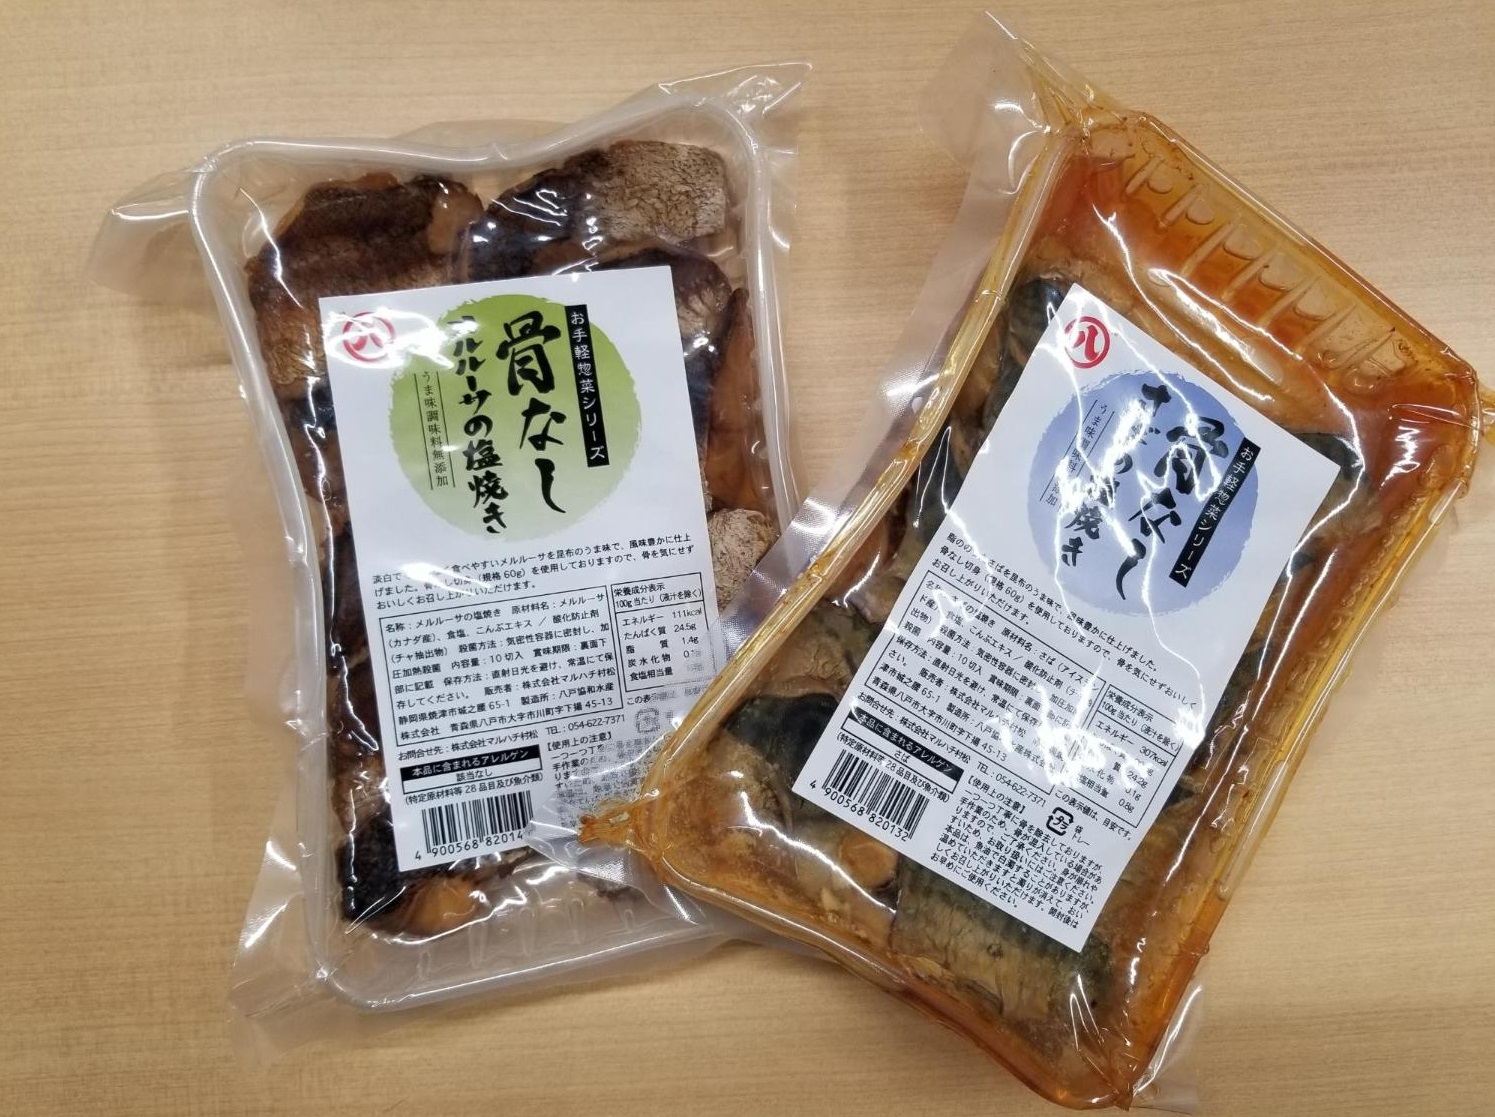 株式会社マルハチ村松様より真空パック包装の焼き魚の寄付